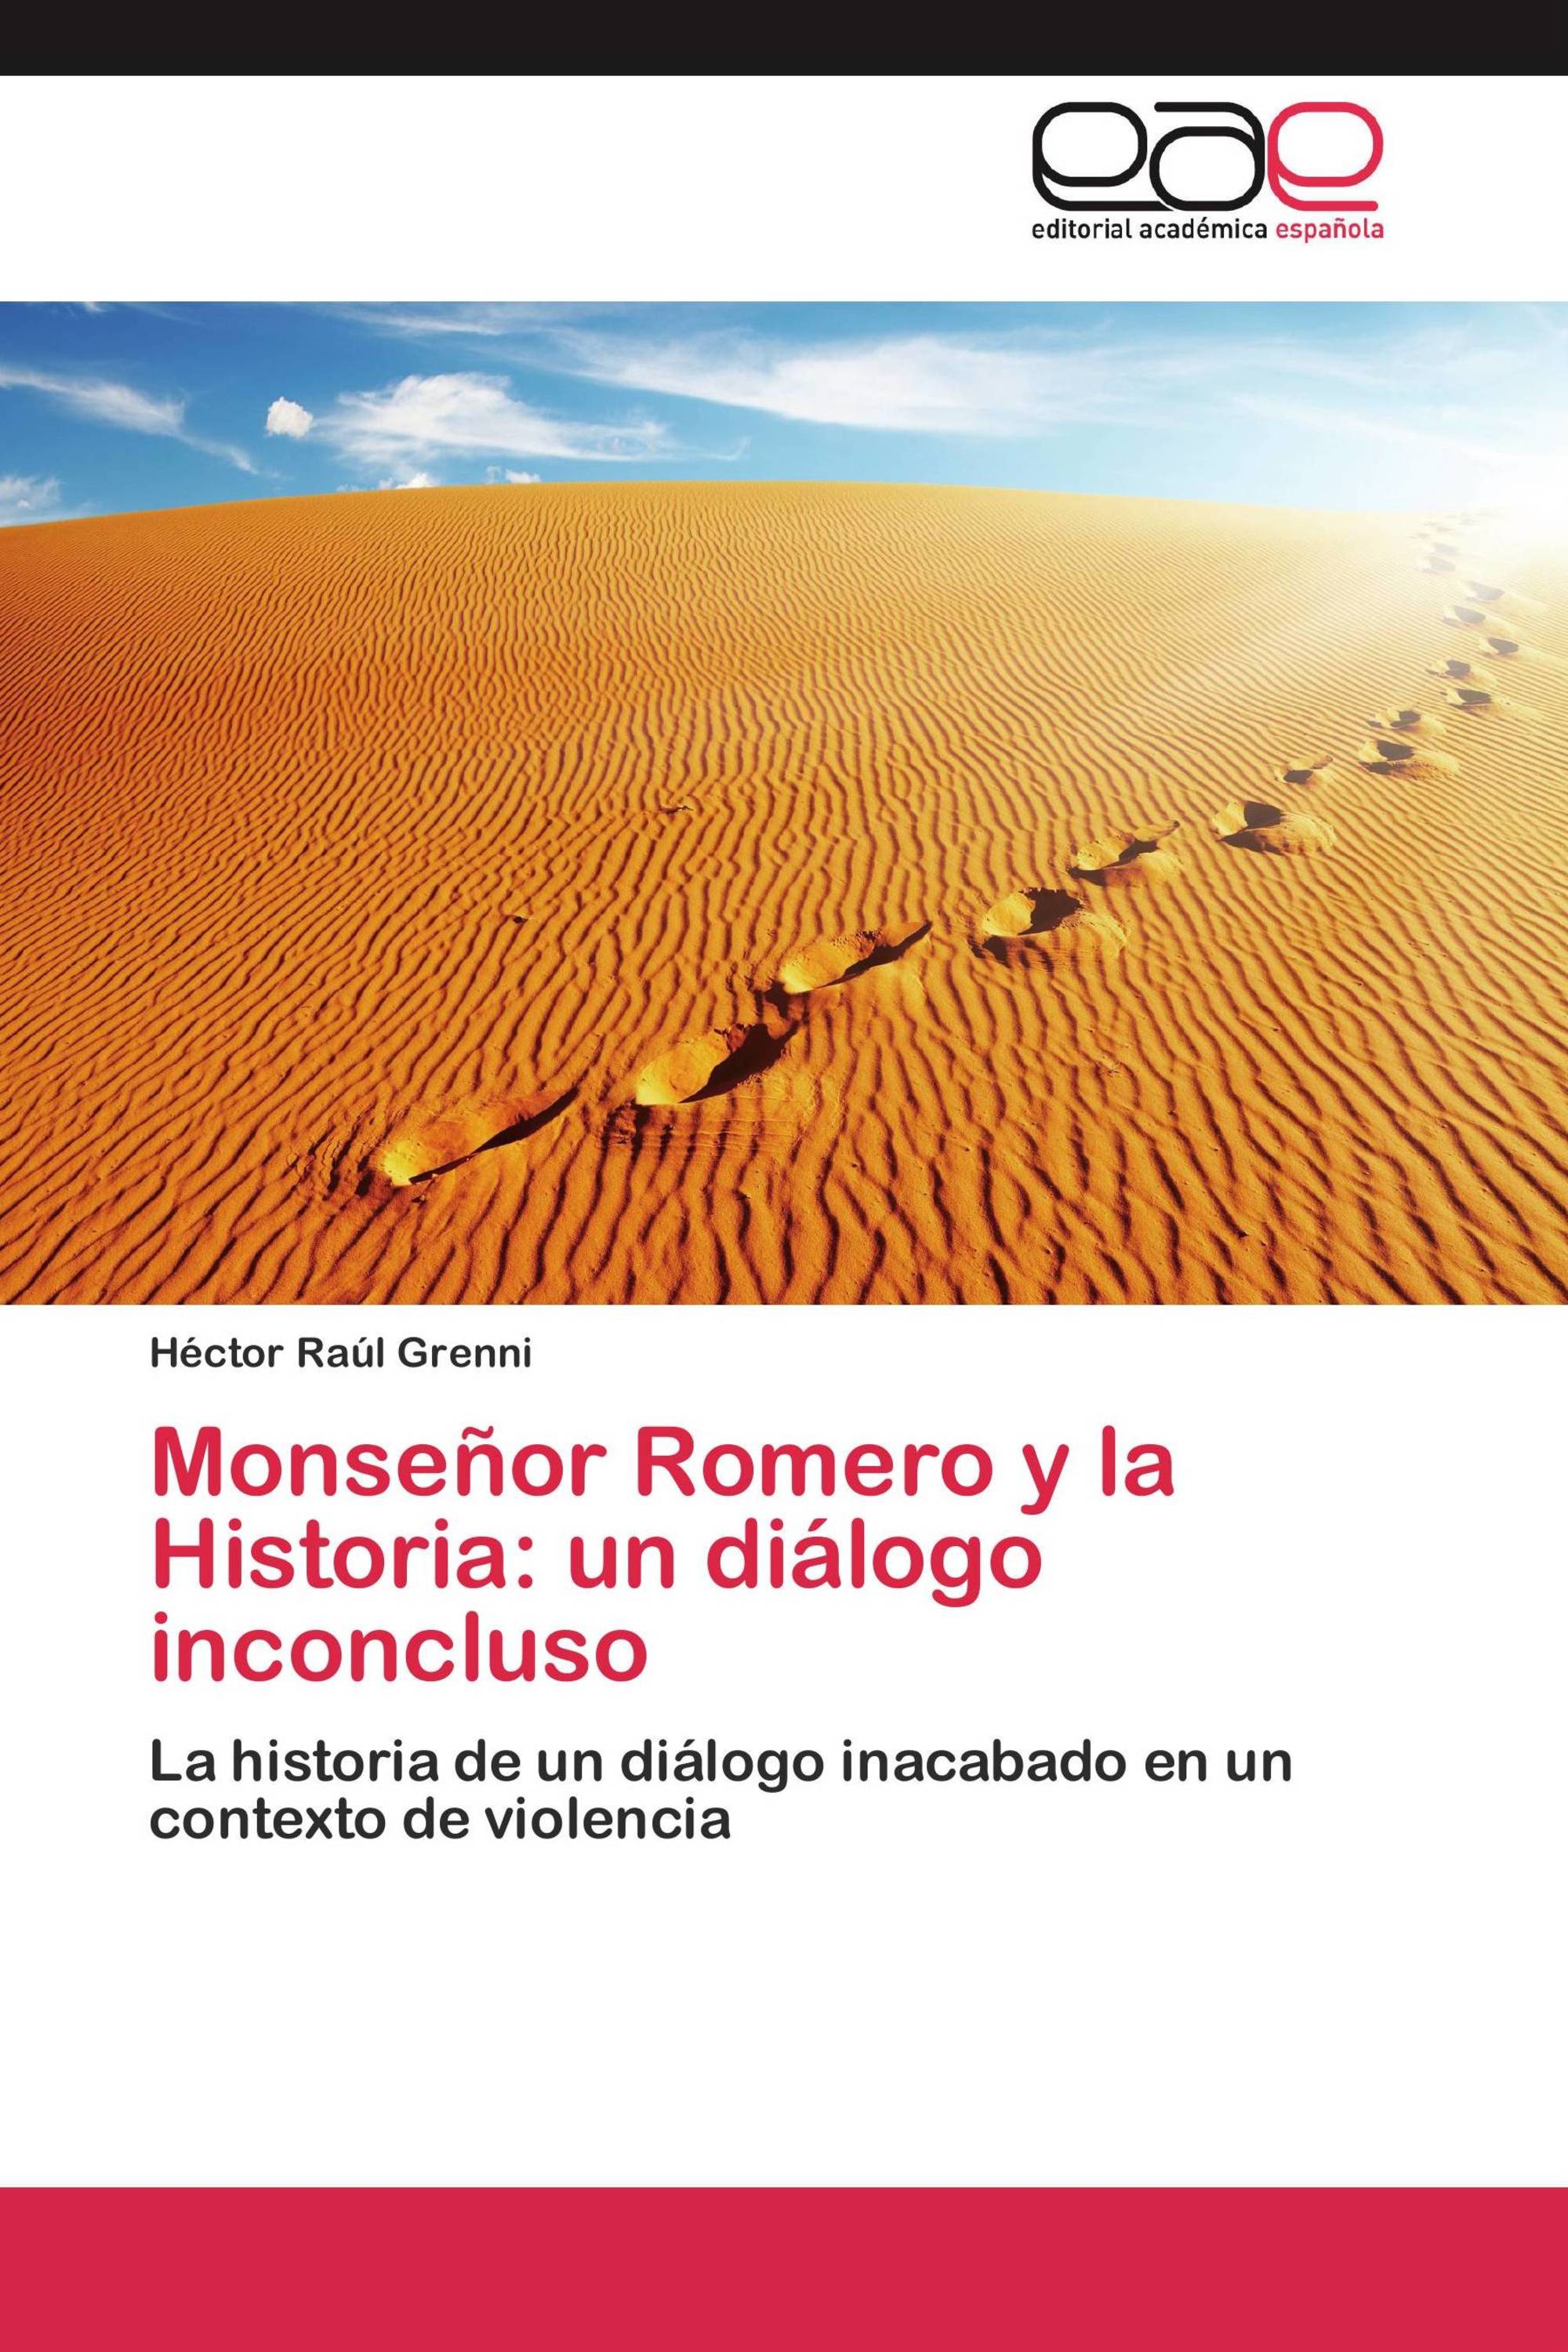 Monseñor Romero y la Historia: un diálogo inconcluso